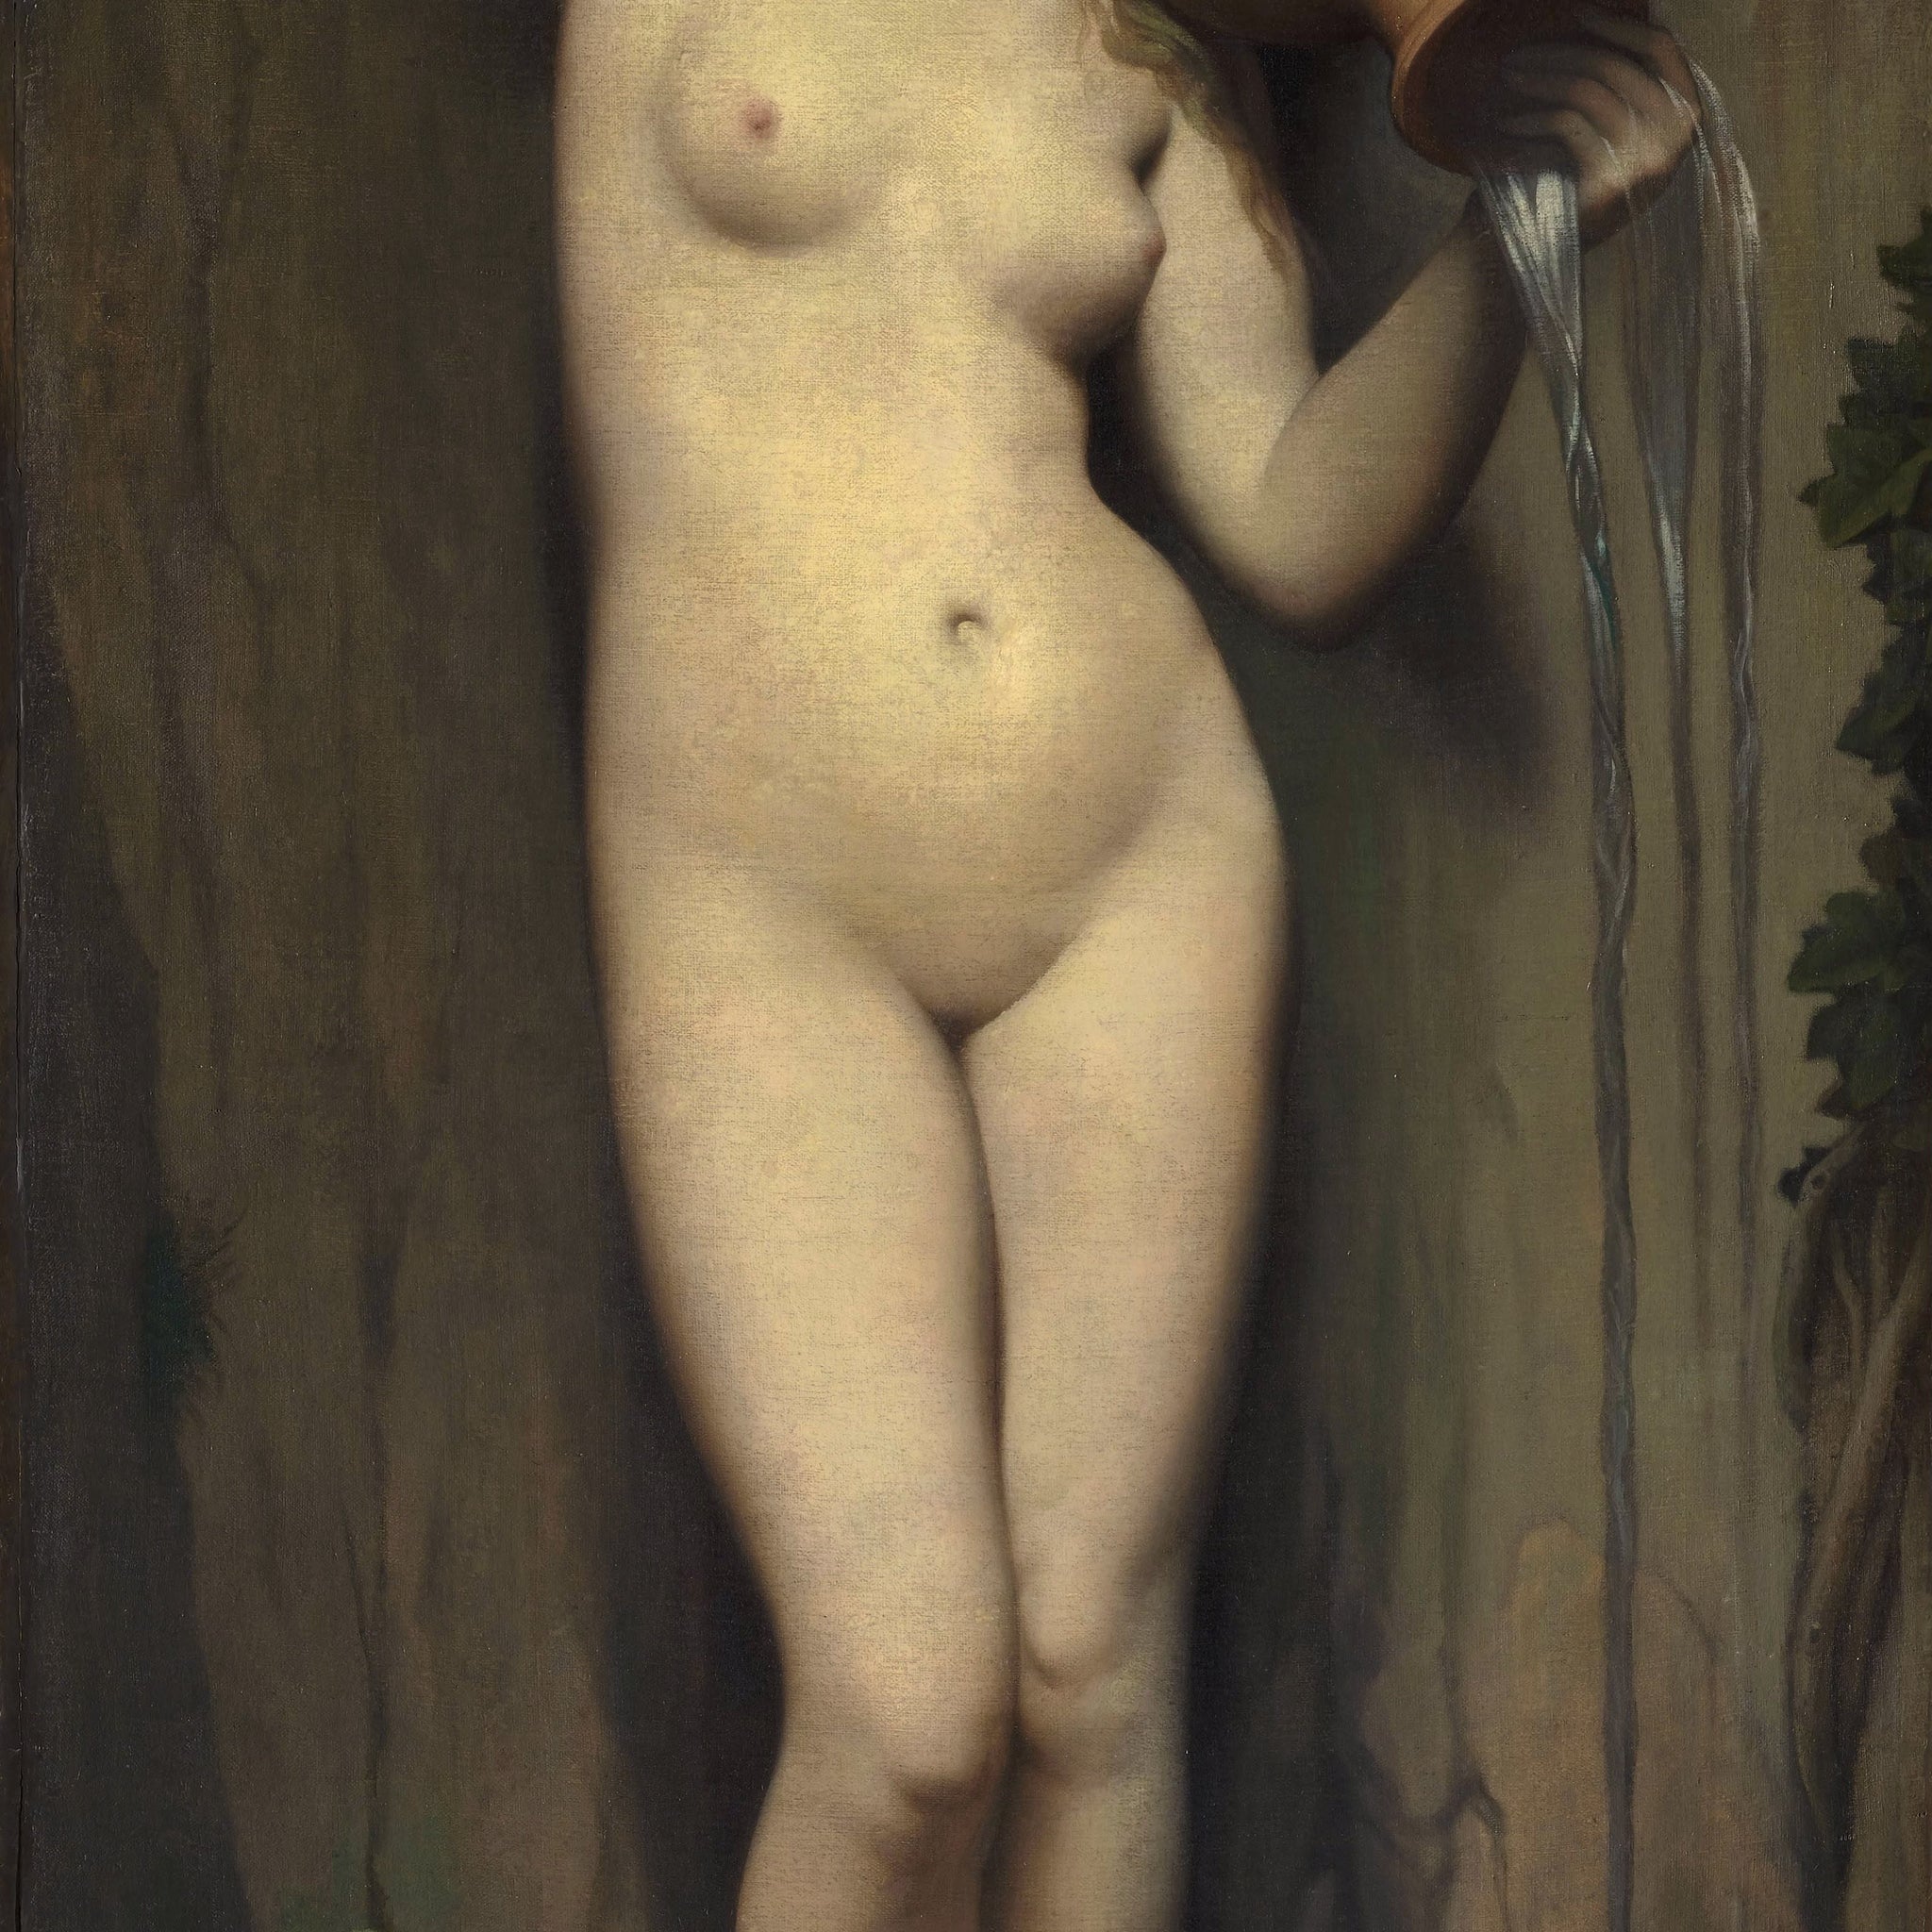 Le printemps - Jean-Auguste-Dominique Ingres